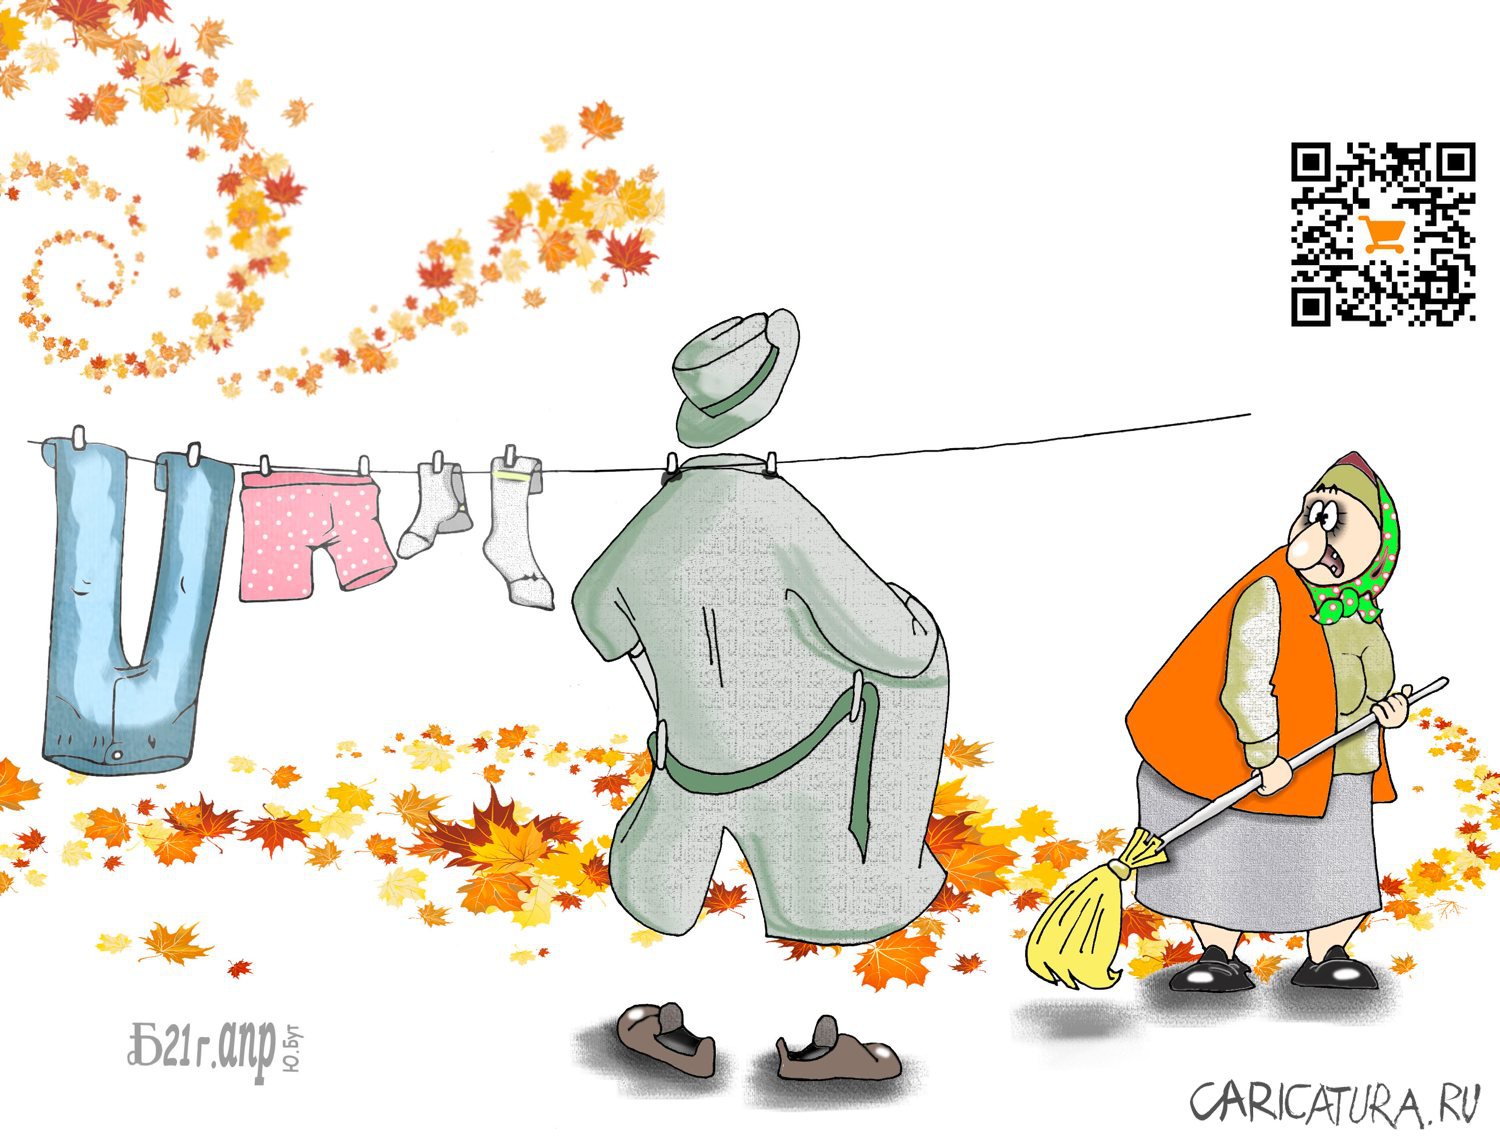 Карикатура "Про ветер В", Борис Демин